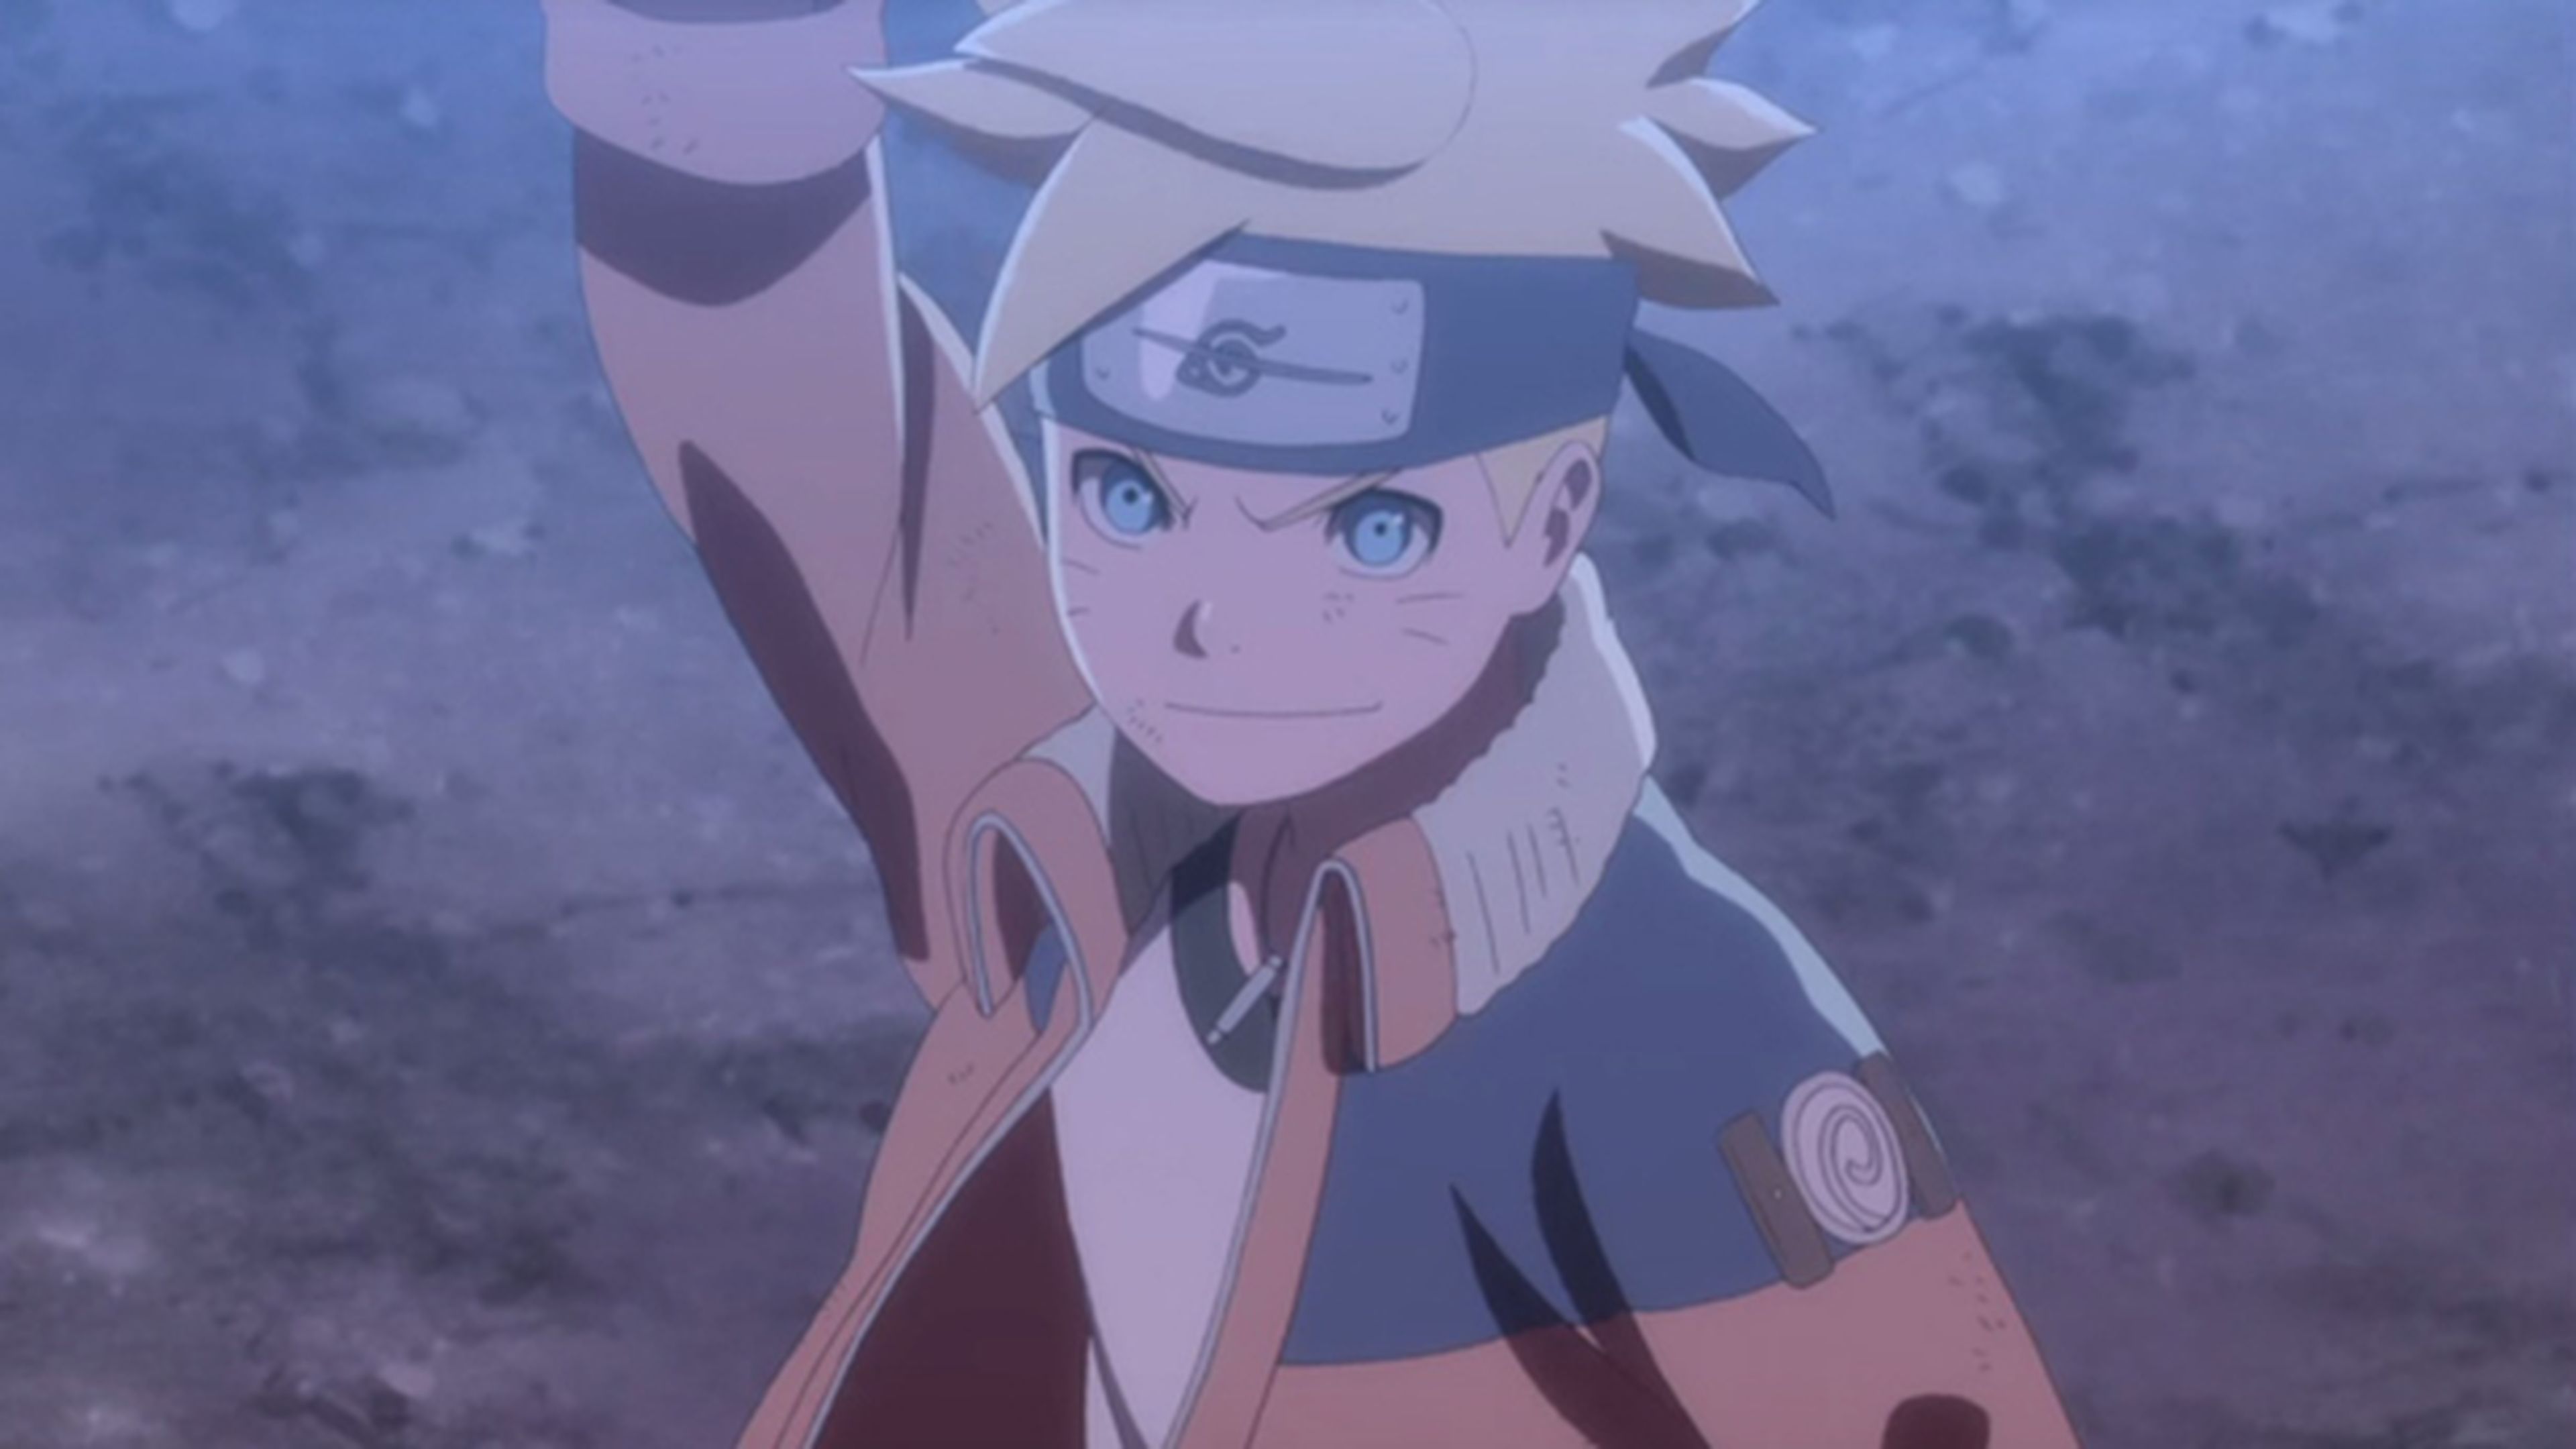 Crítica sobre Boruto: Naruto next generations e Boruto: Naruto the movie